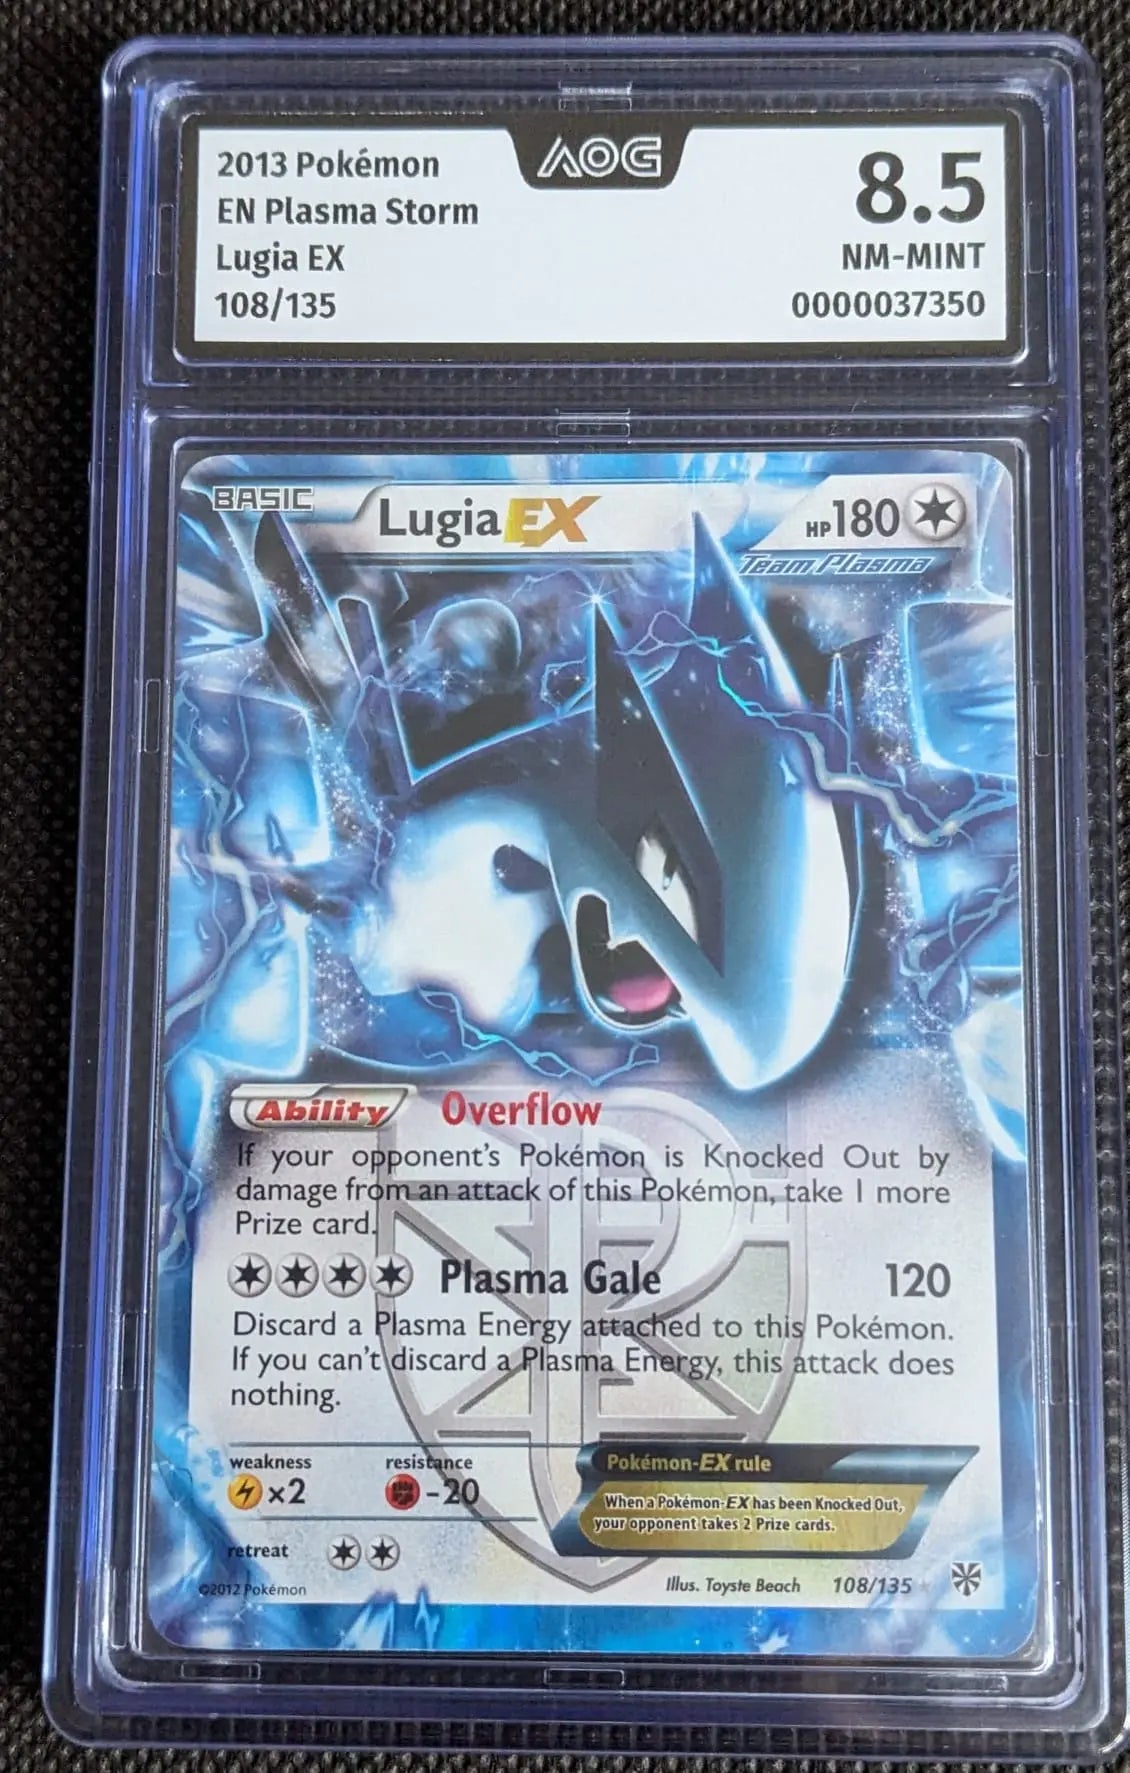 AoG 8,5 Lugia EX 108/135 Pokemon Karte Plasma Sturm English - Image #1